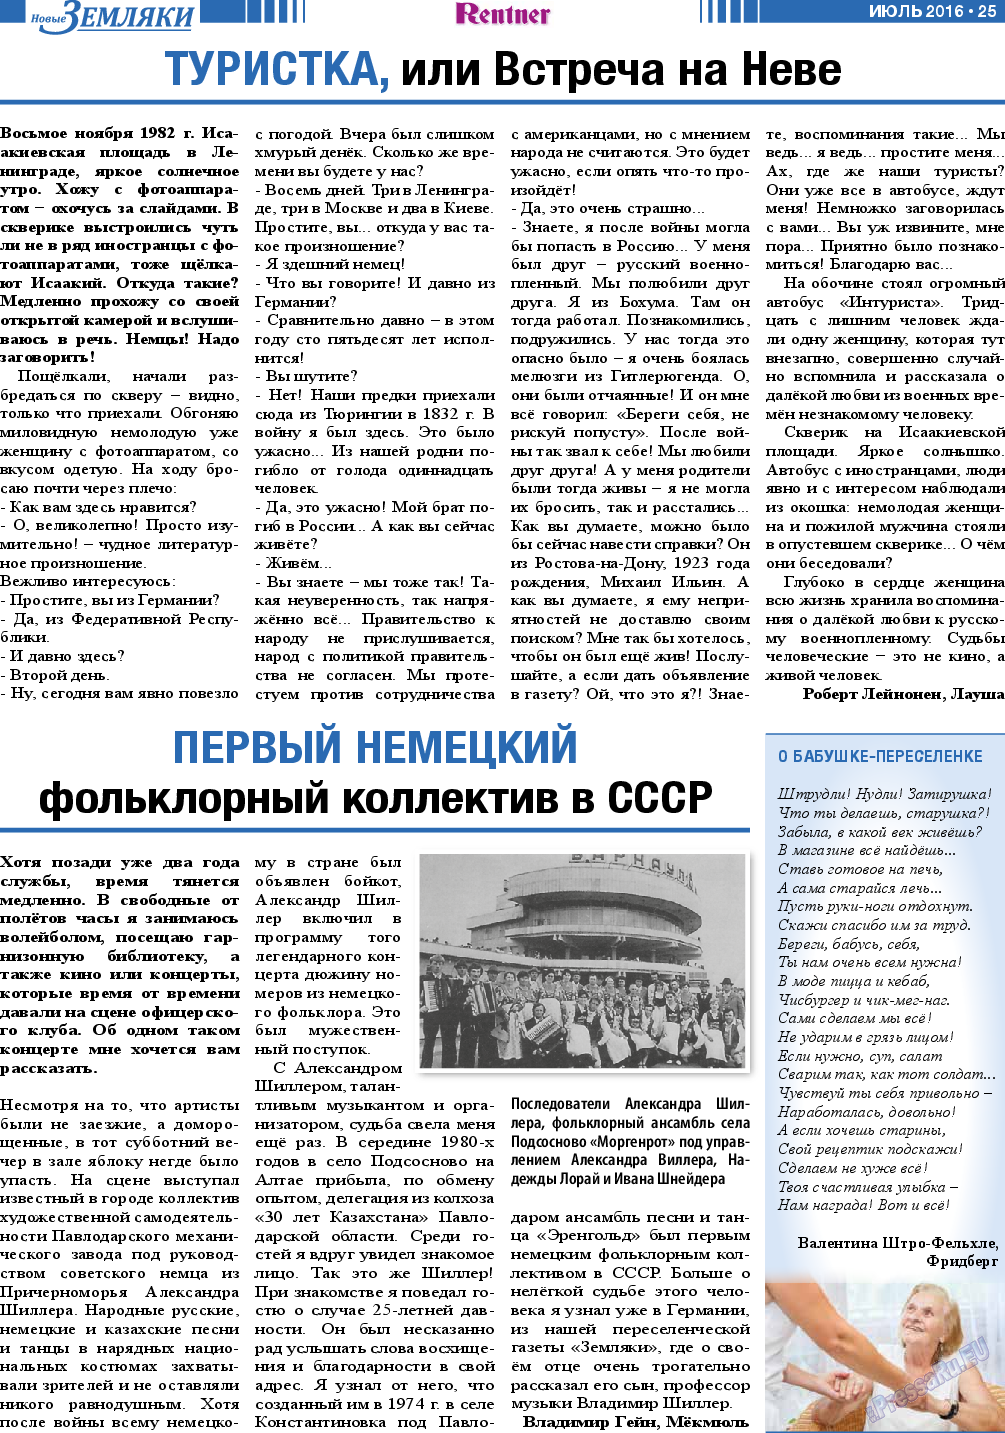 Новые Земляки (газета). 2016 год, номер 7, стр. 25